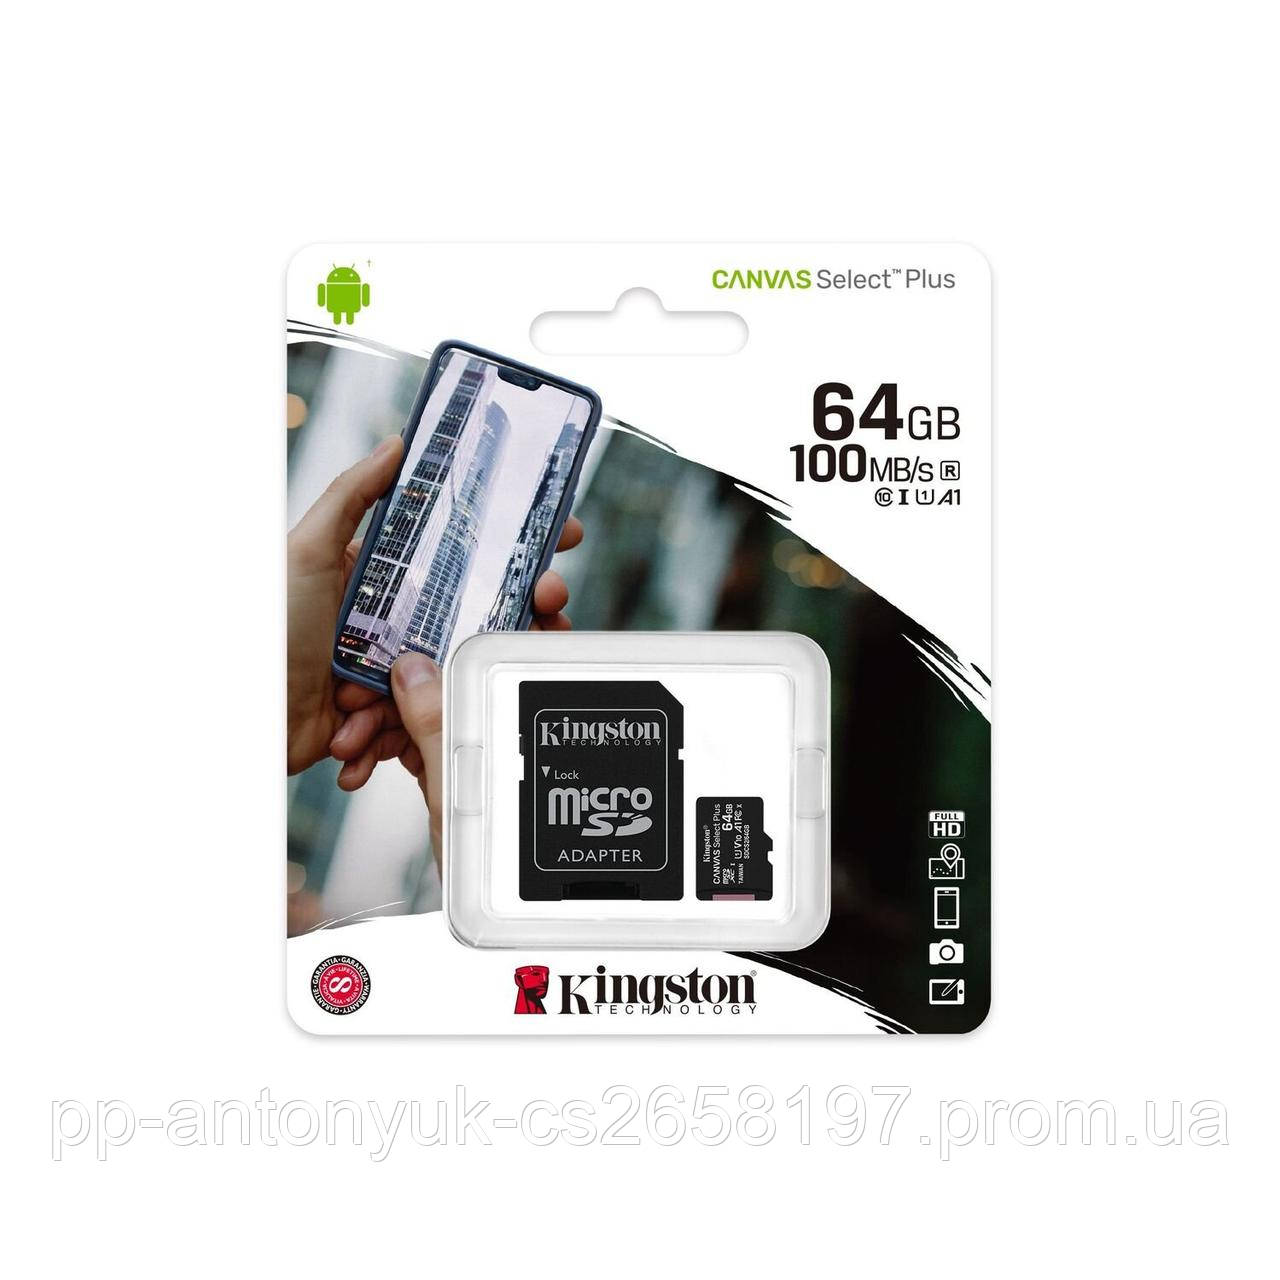 Картка пам'яті Kingston MicroSDХС Canvas Select Plus 64 GB Class 10 (Оригінал)